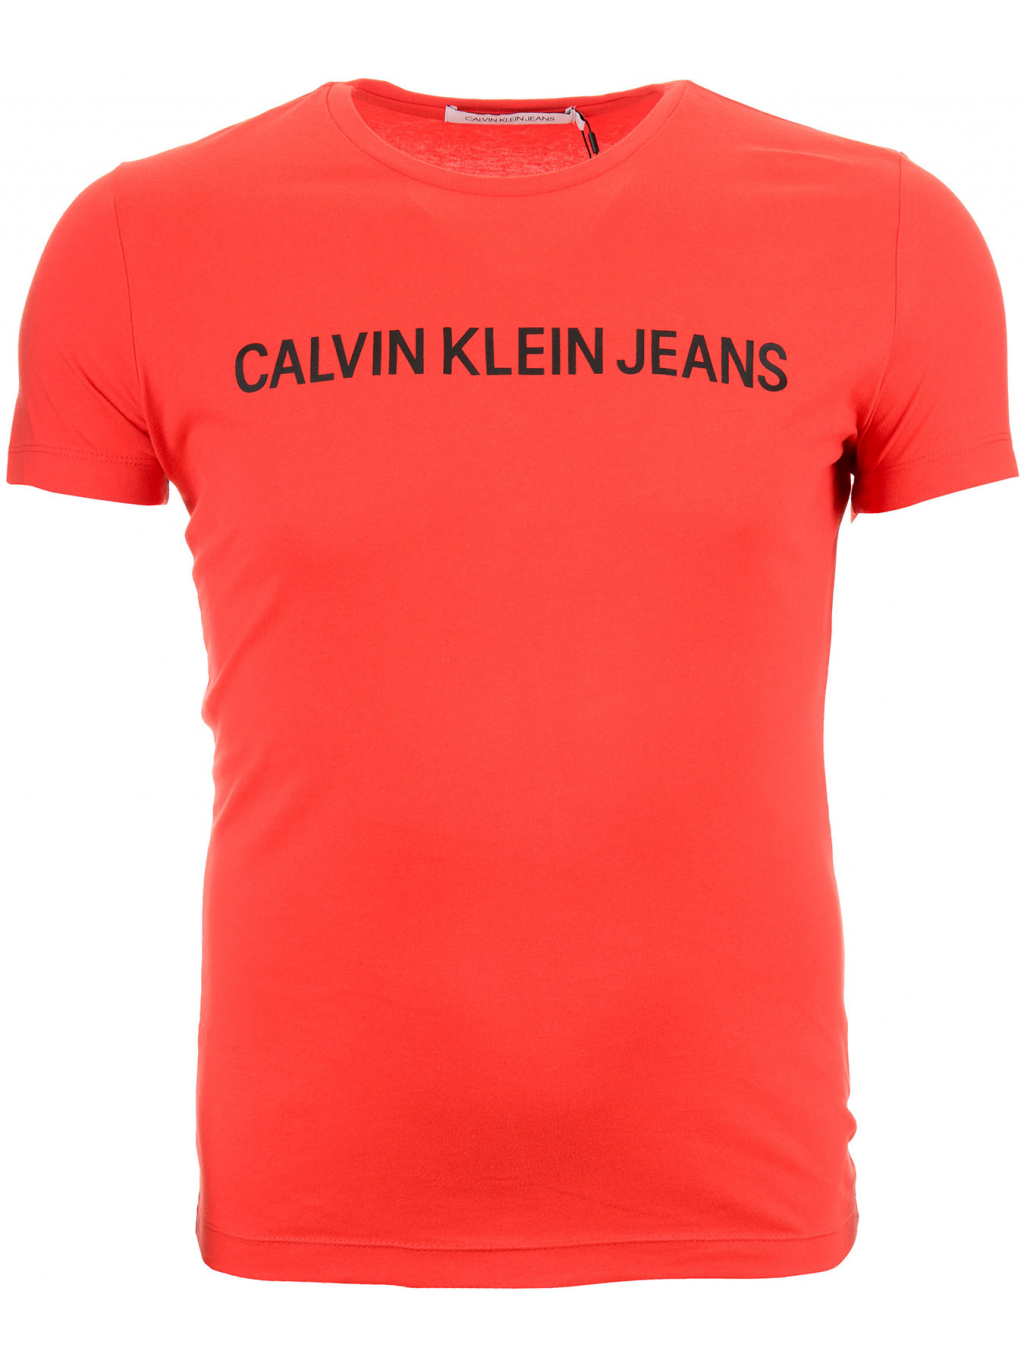 Pánské červené tričko s nápisem Calvin Klein Jeans - Fashion Shack